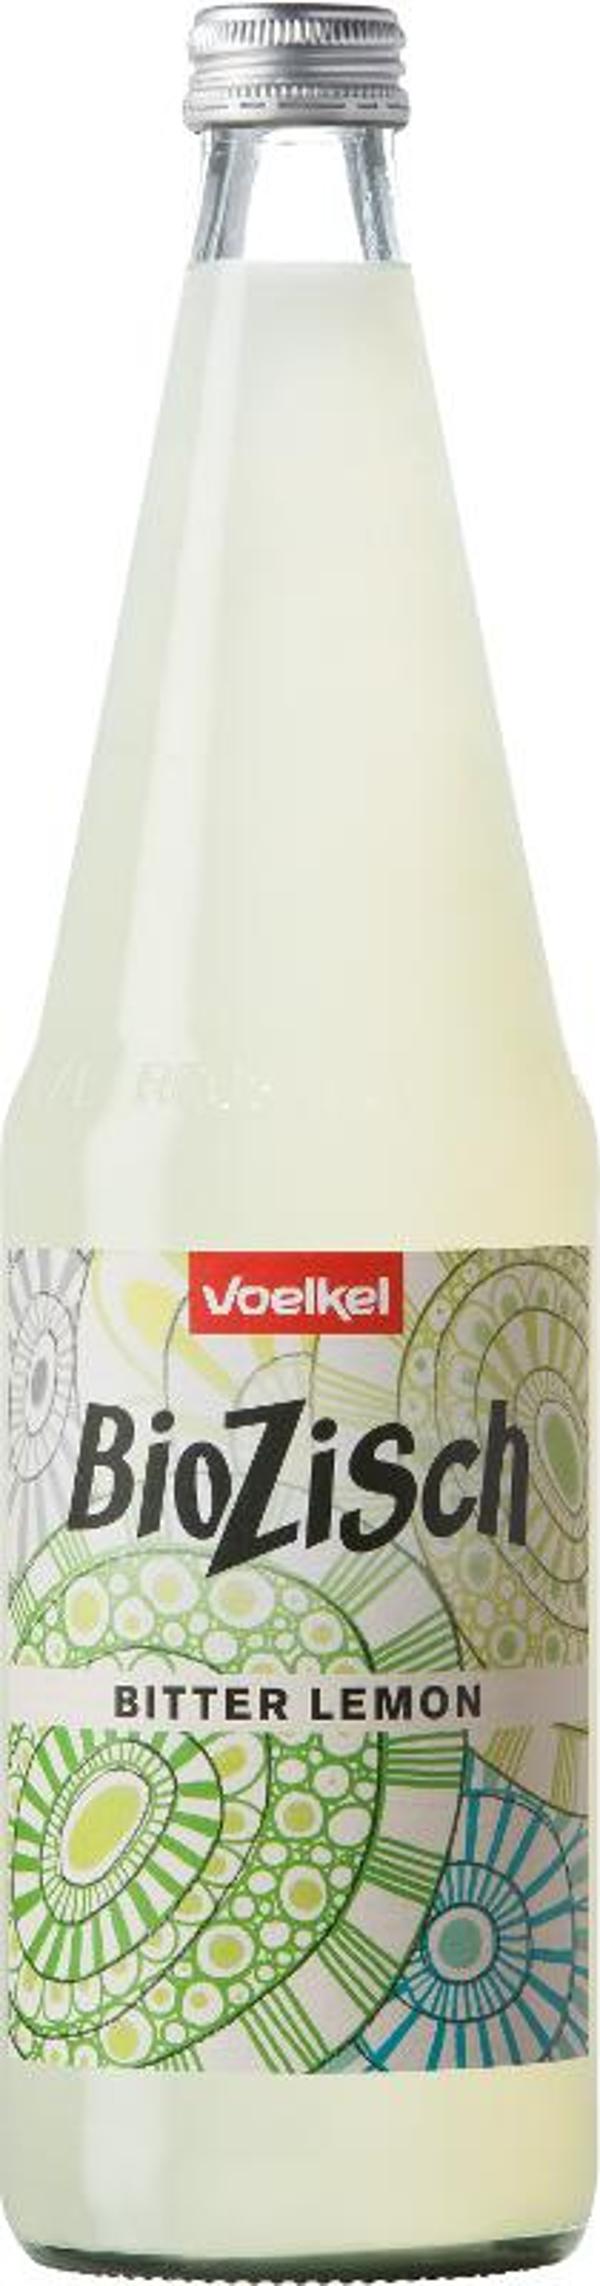 Produktfoto zu 6er Kasten Bio-Zisch Bitter lemon von Voelkel